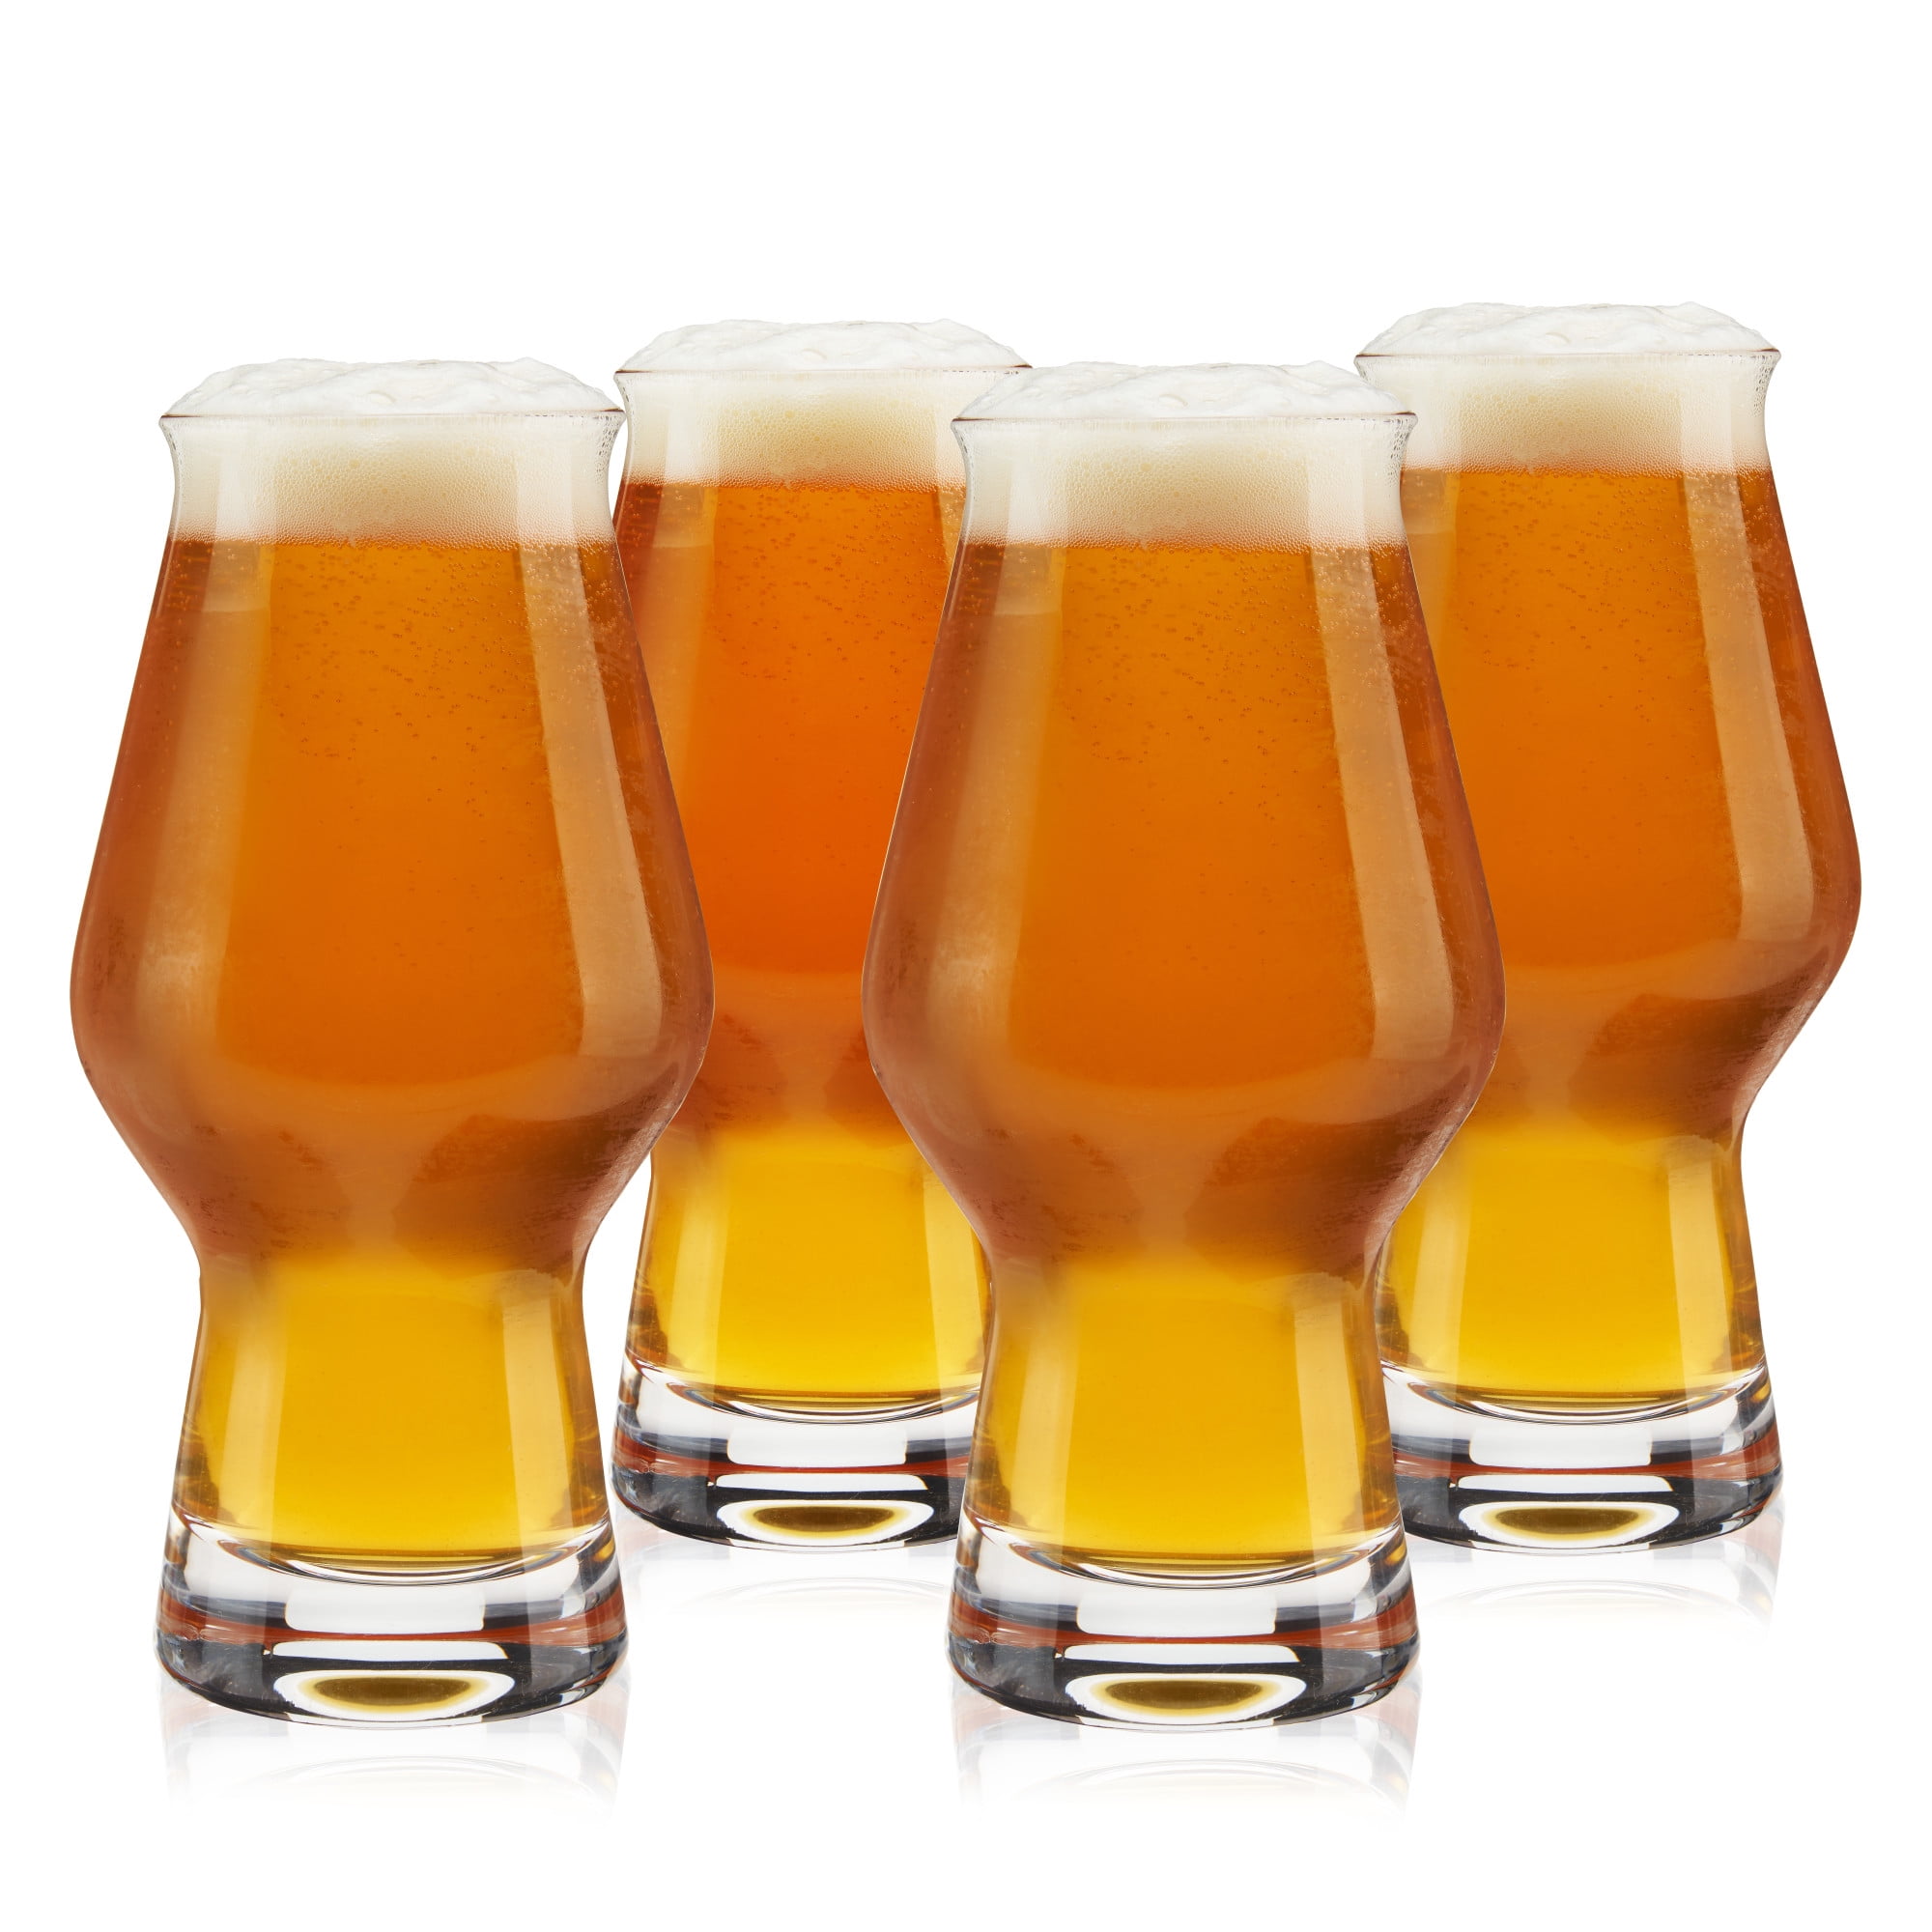 brimley 16oz Nucleated Pilsner Beer Glasses Set of 4 - Craft Beer Drinking  Glasses Set for Pilsners …See more brimley 16oz Nucleated Pilsner Beer